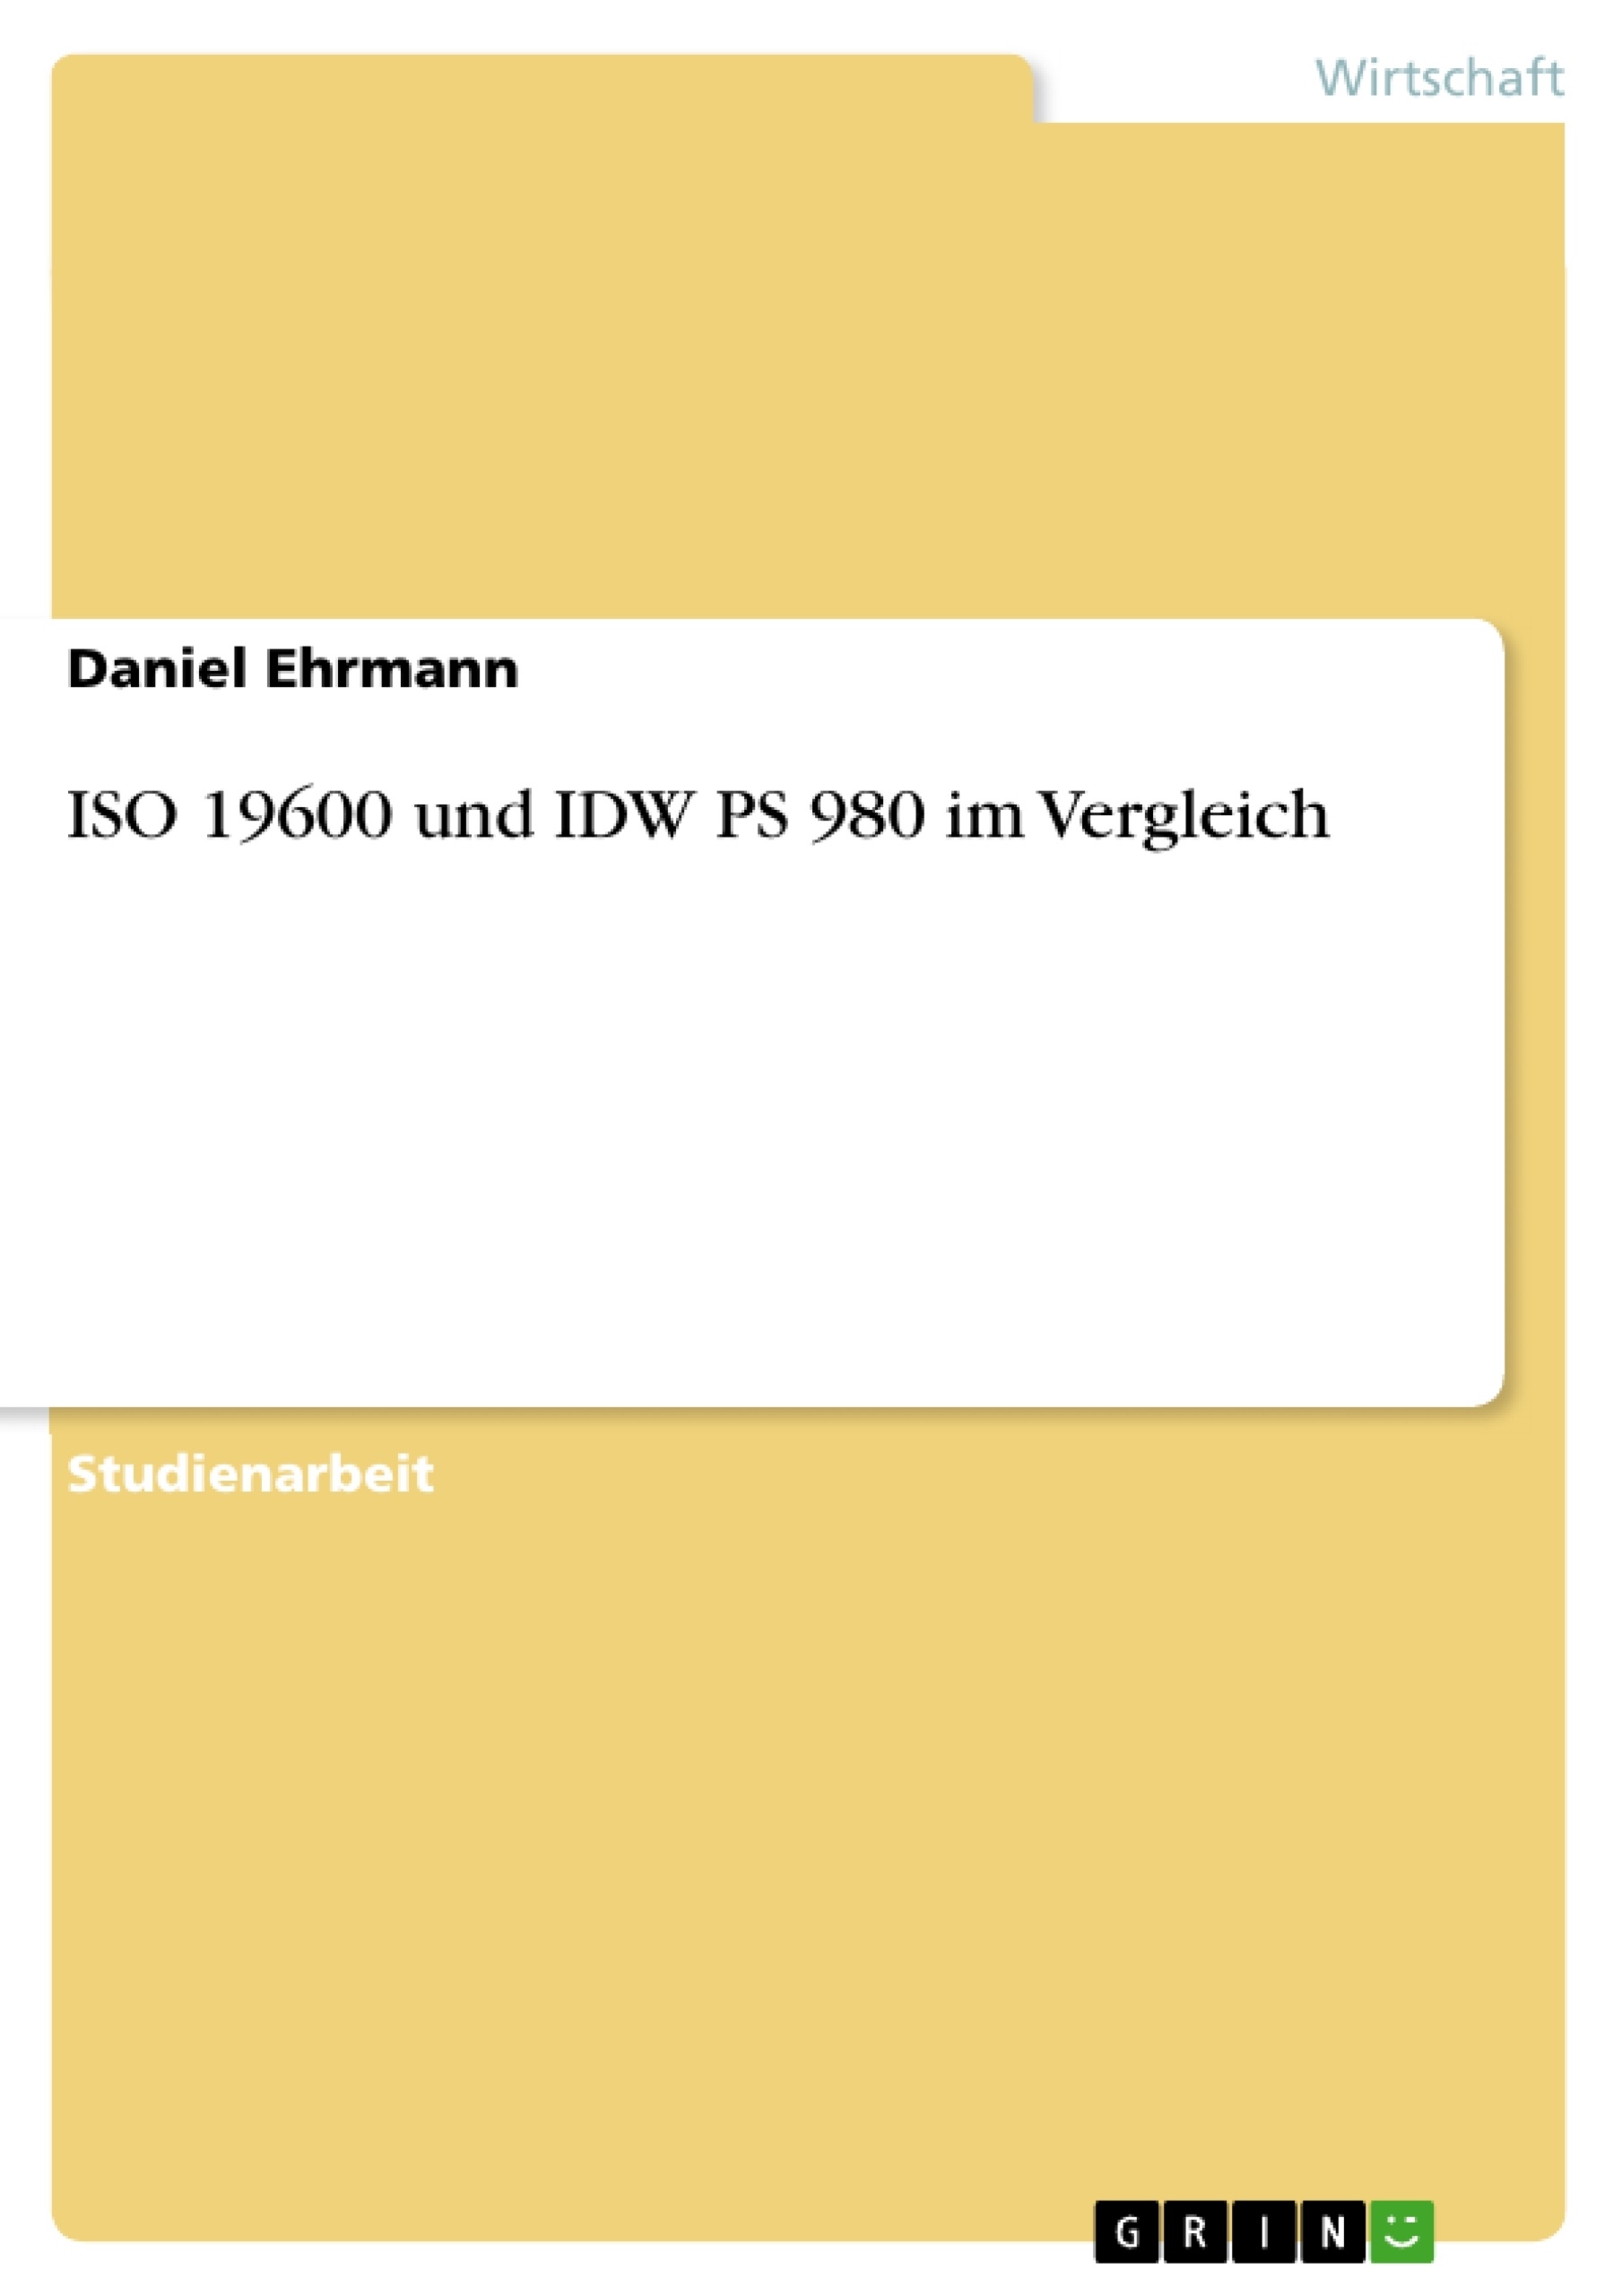 Title: ISO 19600 und IDW PS 980 im Vergleich